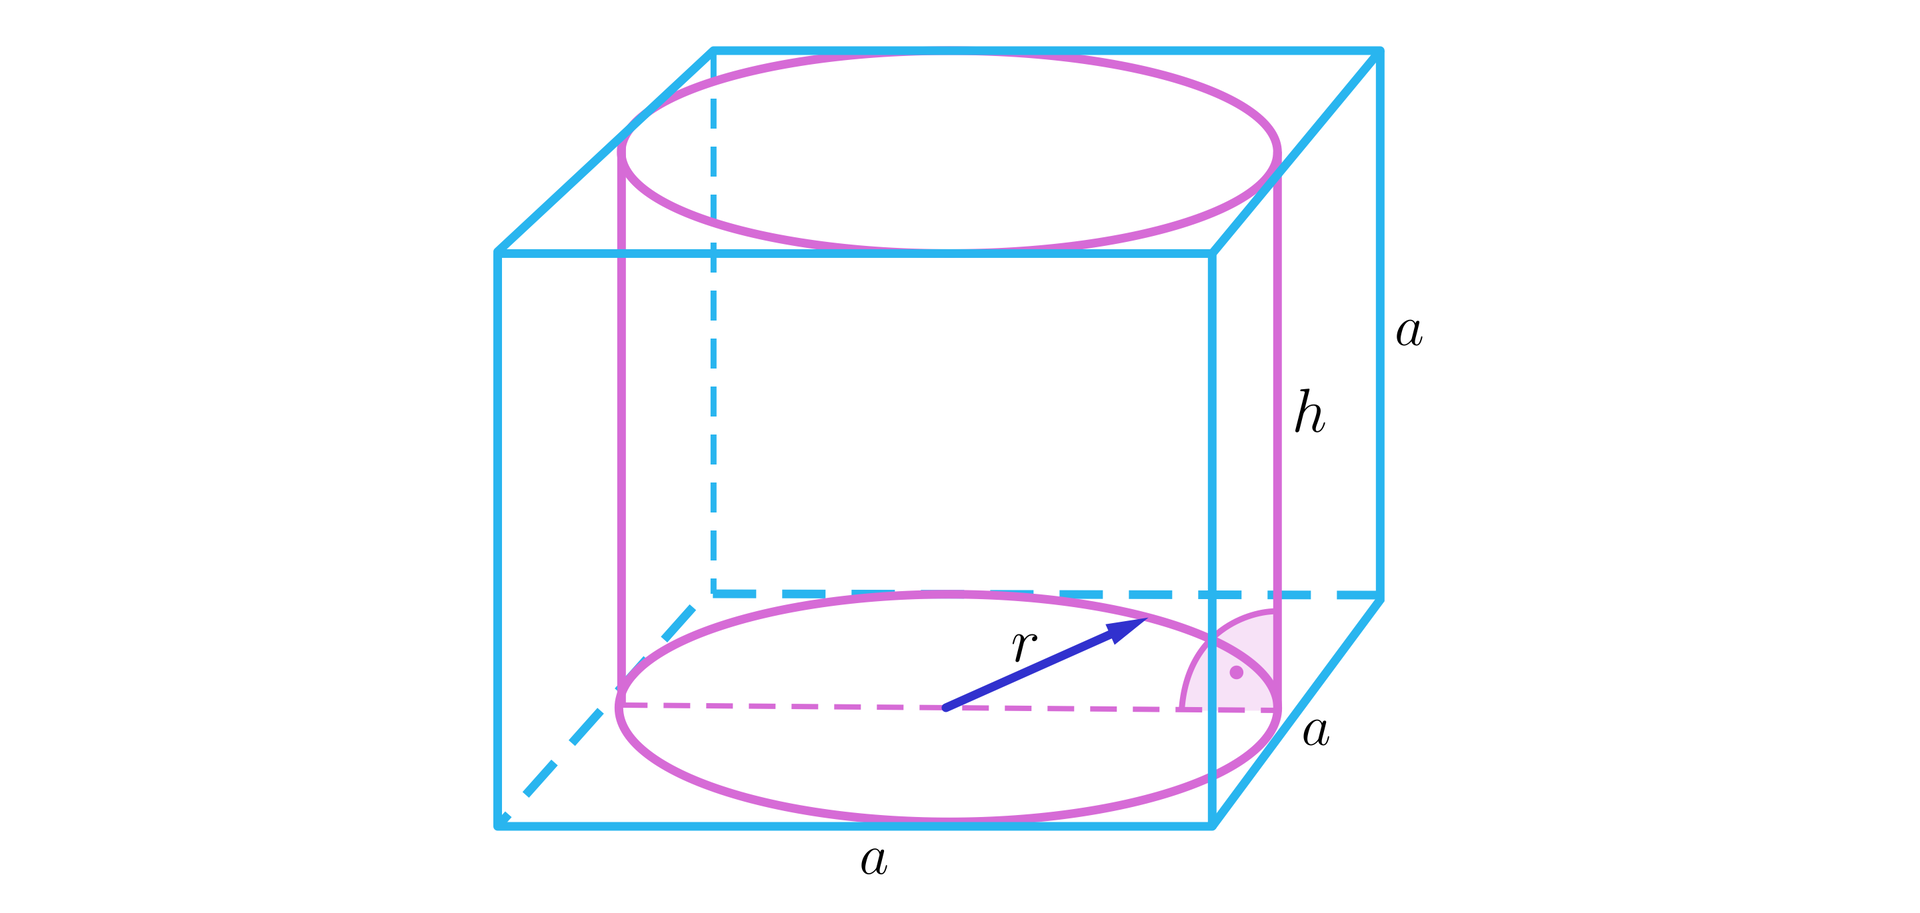 Ilustracja przedstawia walec o długości promienia podstawy r oraz wysokości h wpisanego w sześcian, którego krawędzie zostały oznaczone jako a. Wysokość walca h jest równa długości krawędzi sześcianu a oraz przechodzi przez środek ściany bocznej. 